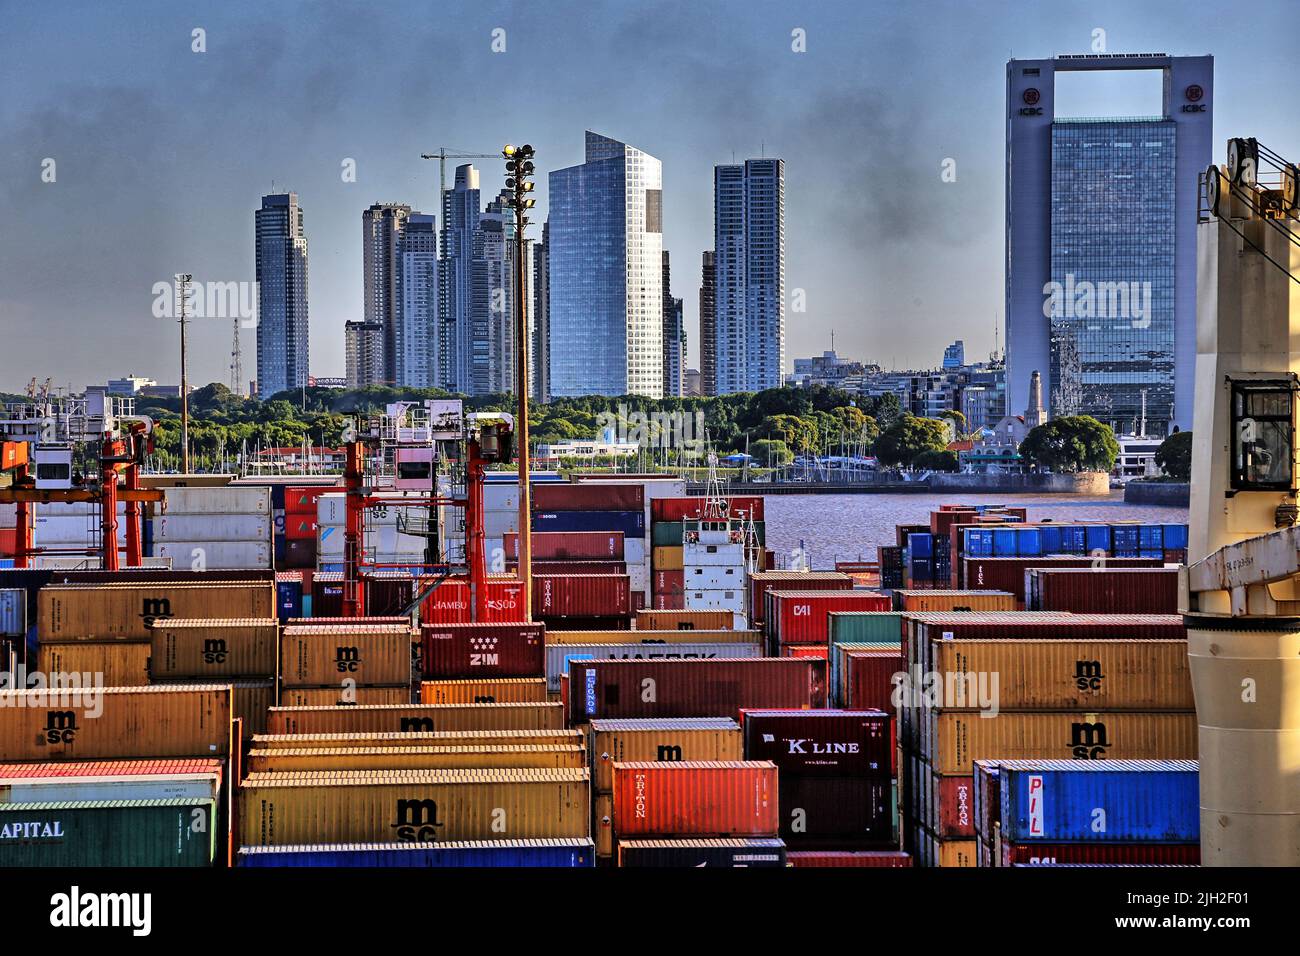 Vor der Silhouette von Montevideo mit ihren Aufragenden Hochhäusern liegt der Containerhafen der Stadt. Die Qualmwolke aus dem Schornstein eines Frachters verdunkelt die Sicht. Stock Photo